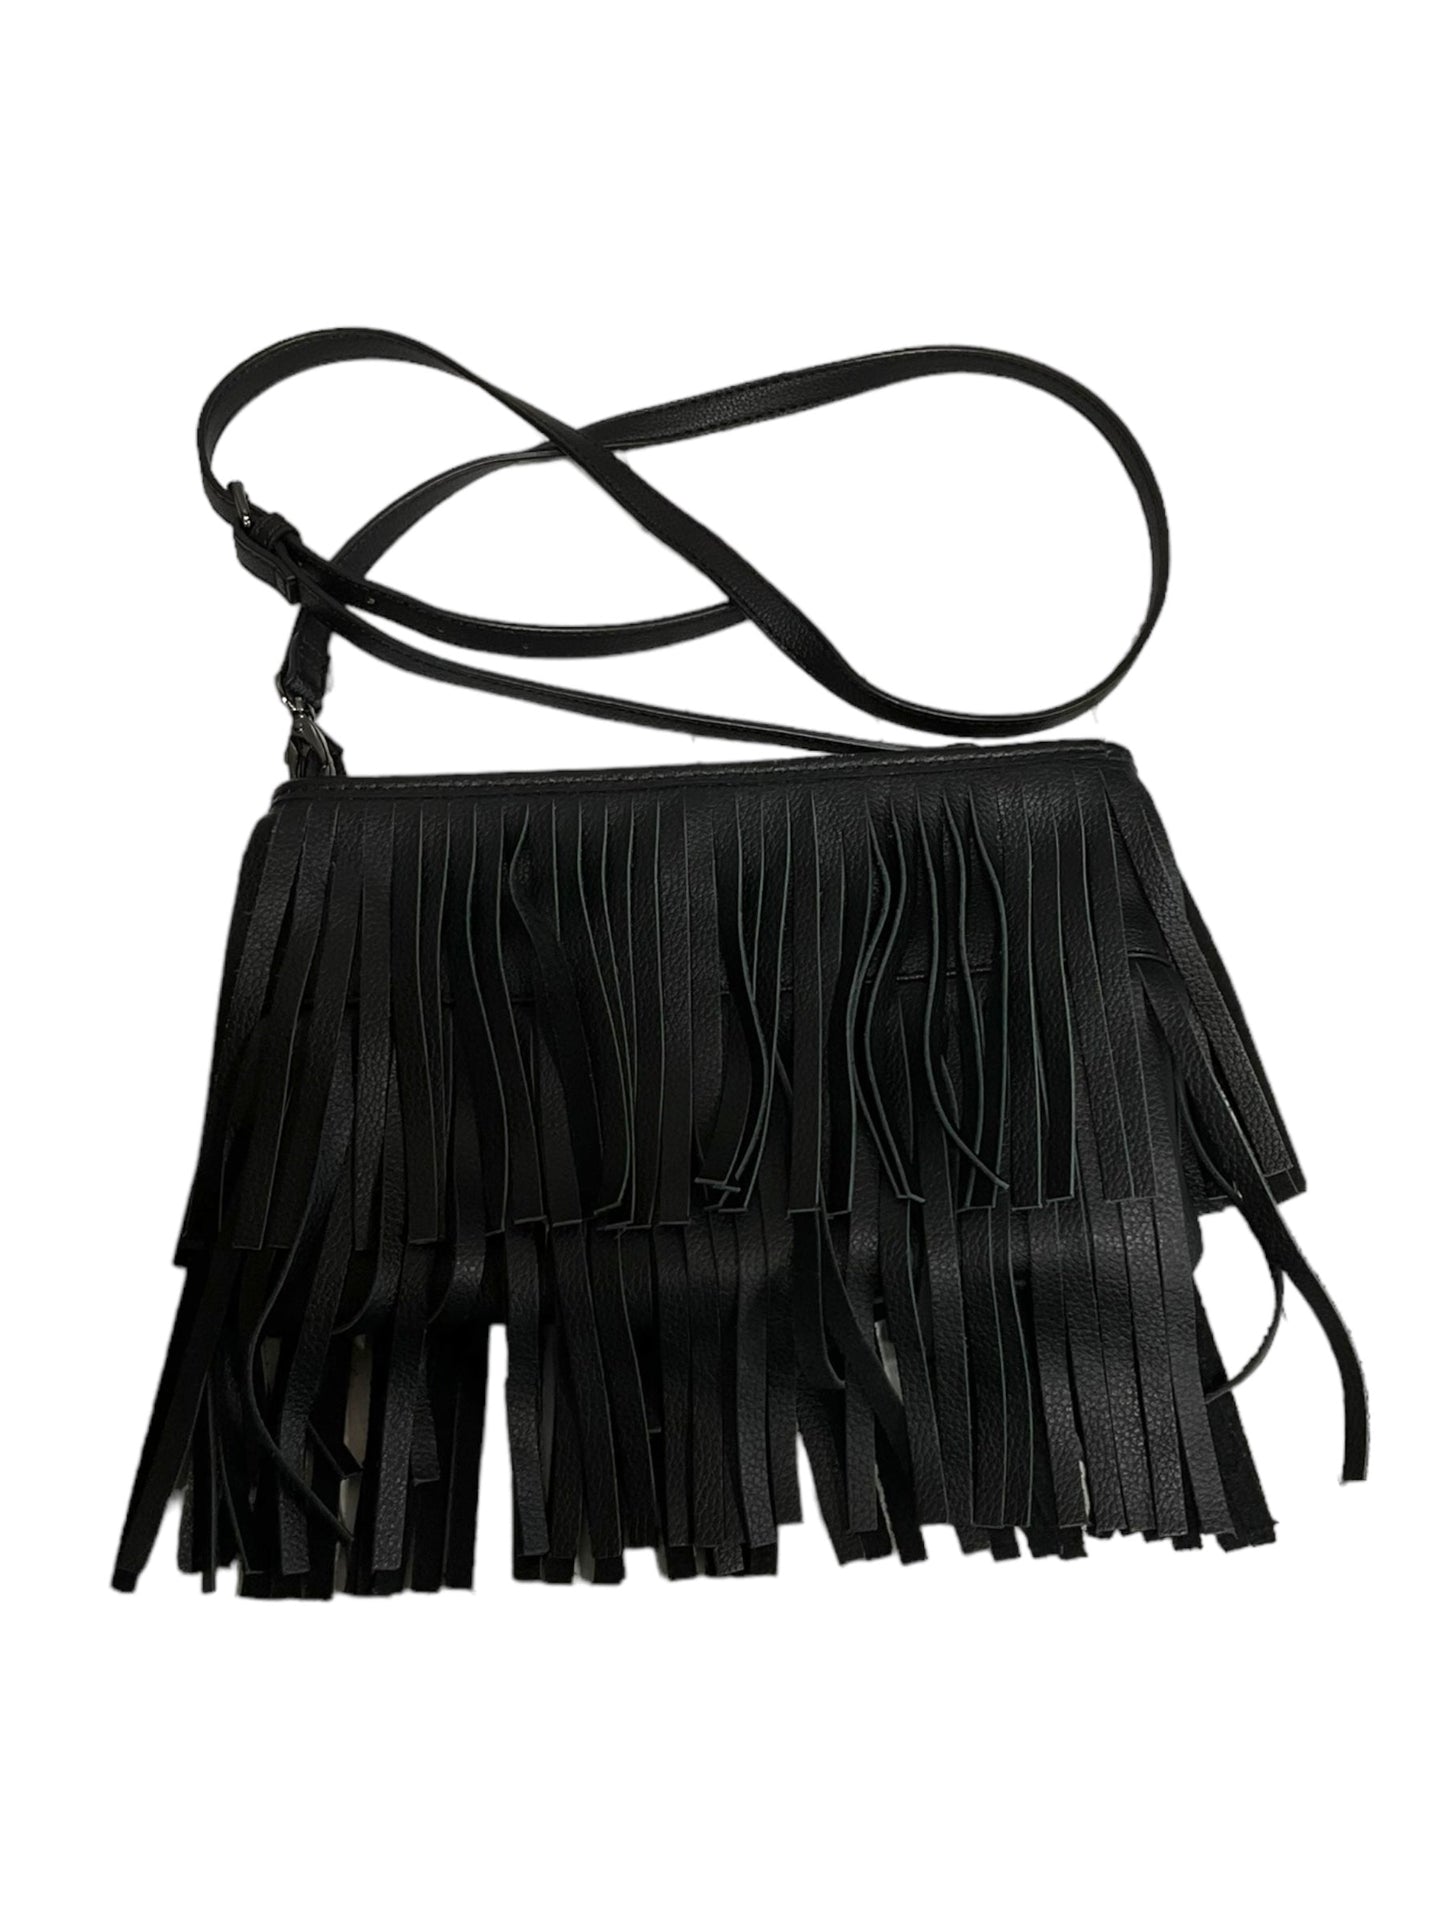 Handbag Leather White House Black Market, Size Medium